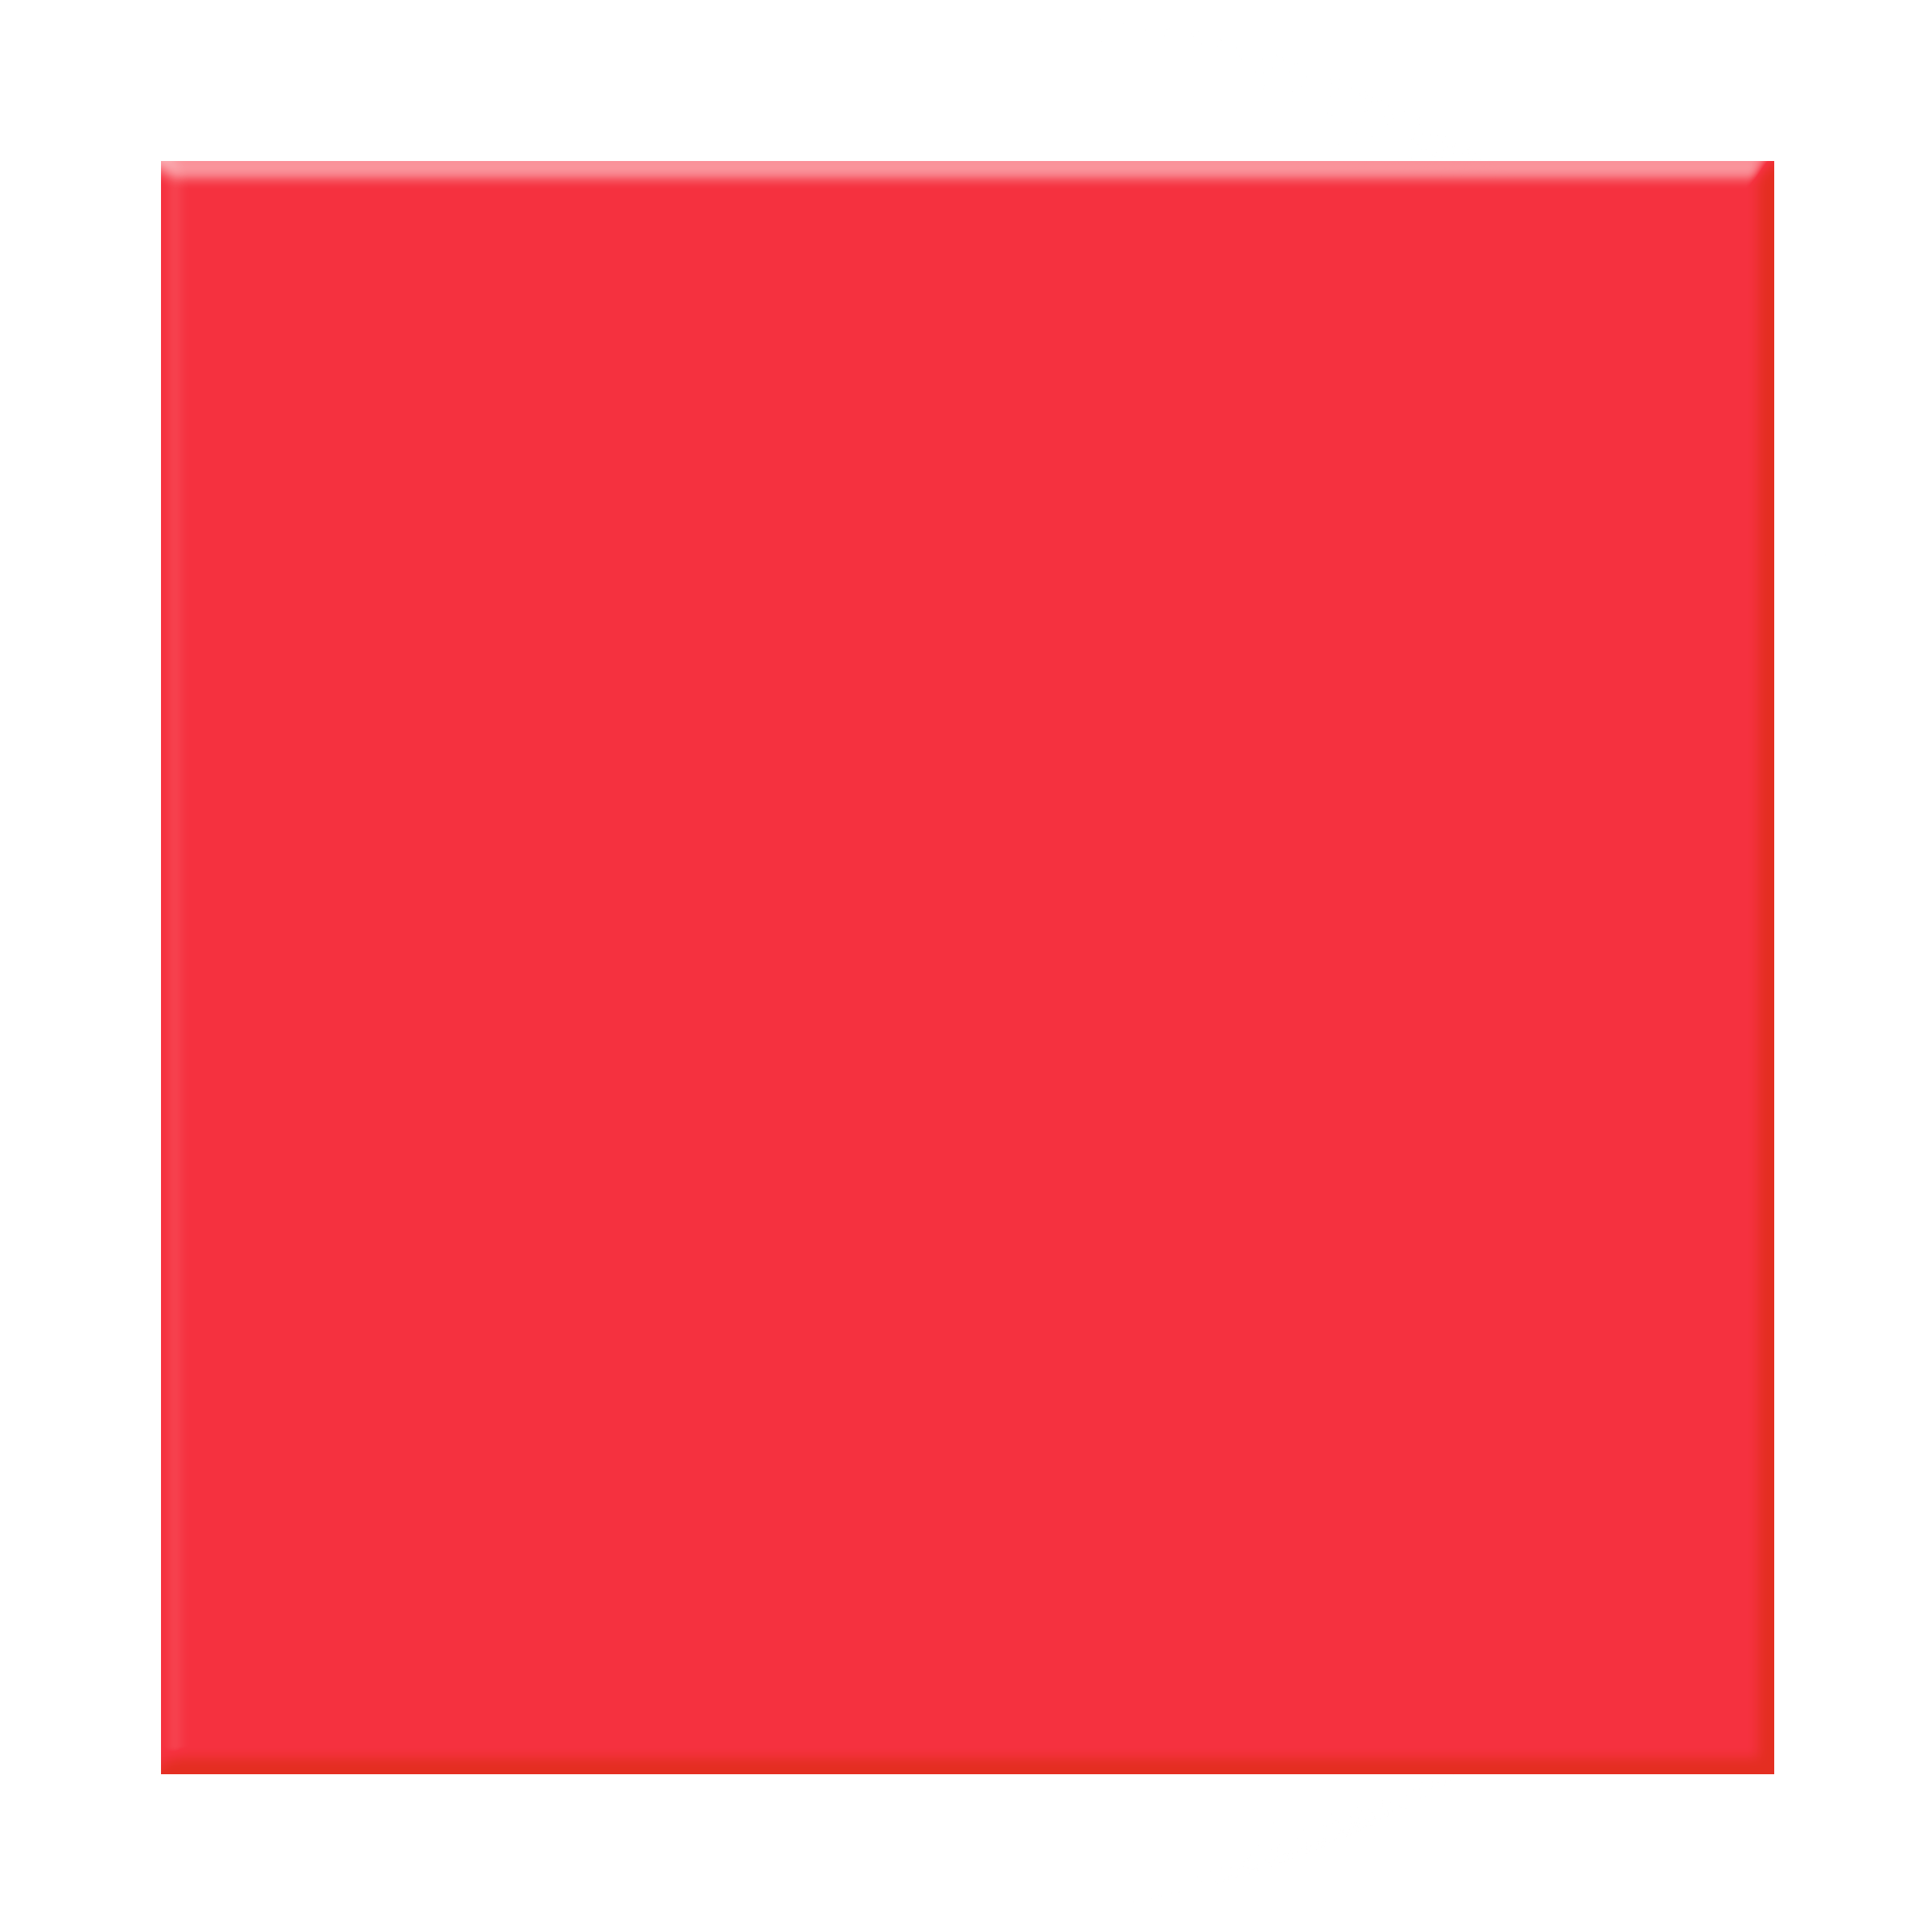 красный квадрат картинка для фона